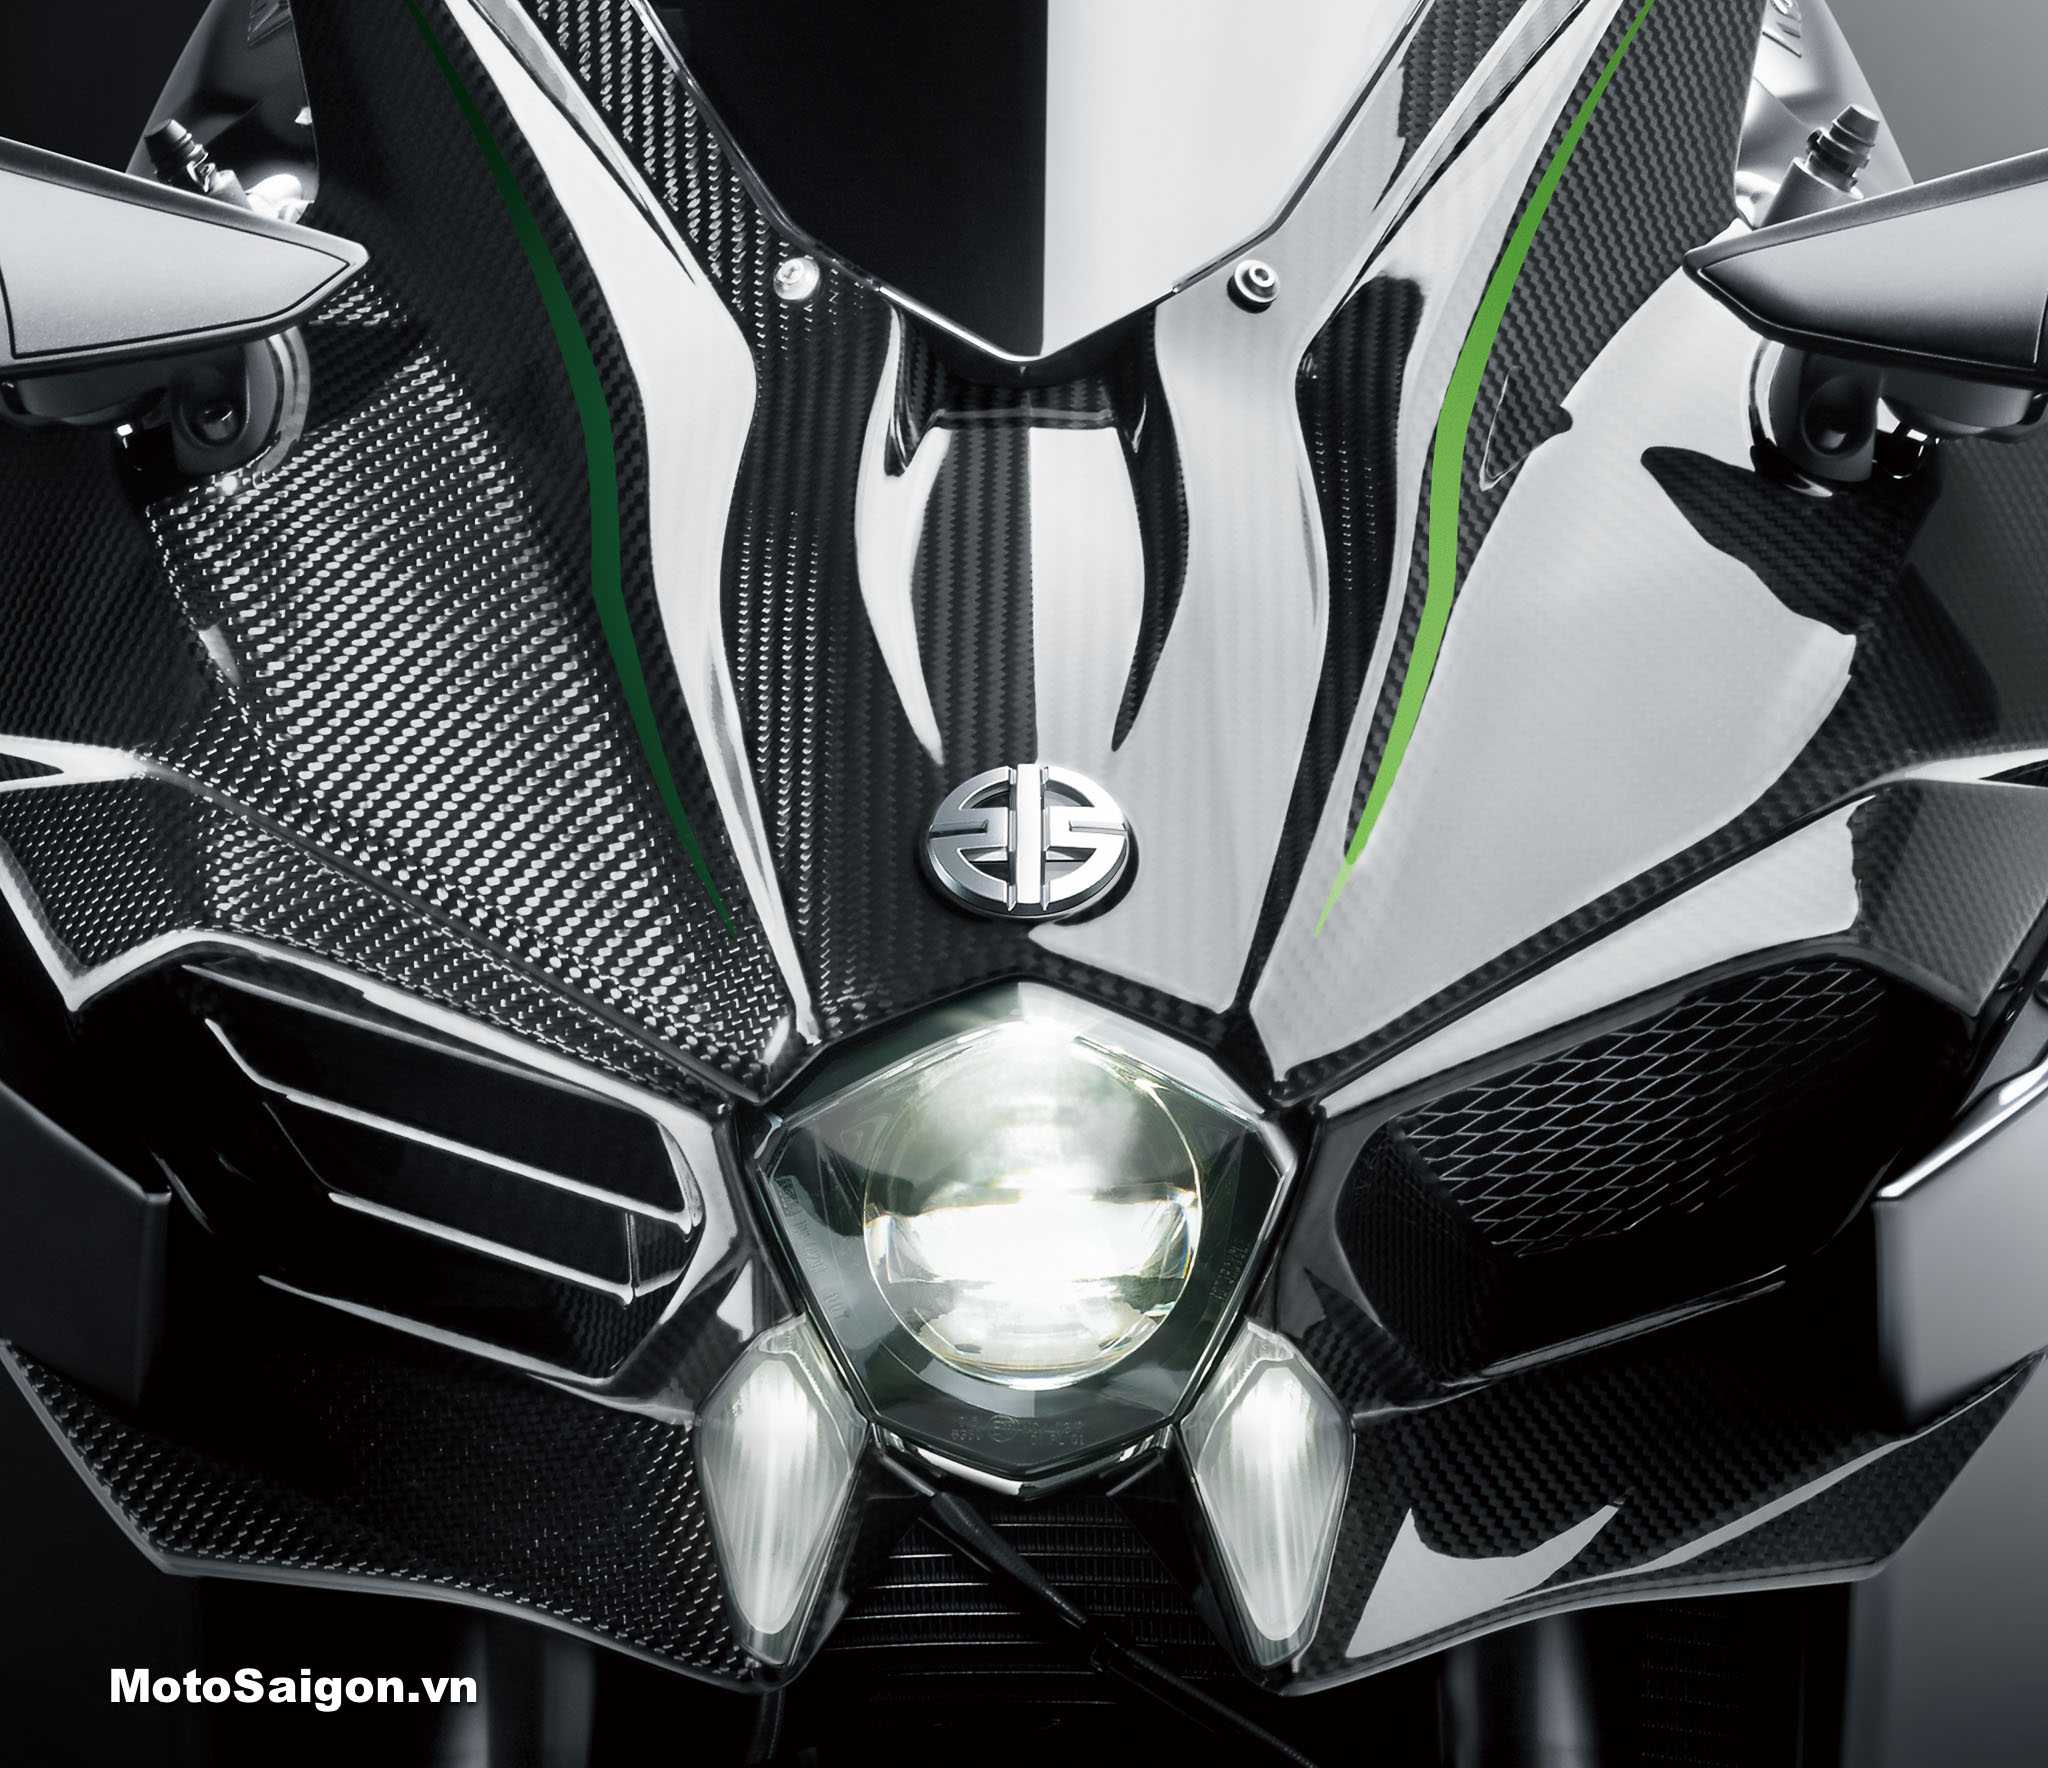 Kawasaki Ninja H2 Carbon 2021 ABS phiên bản mới đã có giá bán - Motosaigon